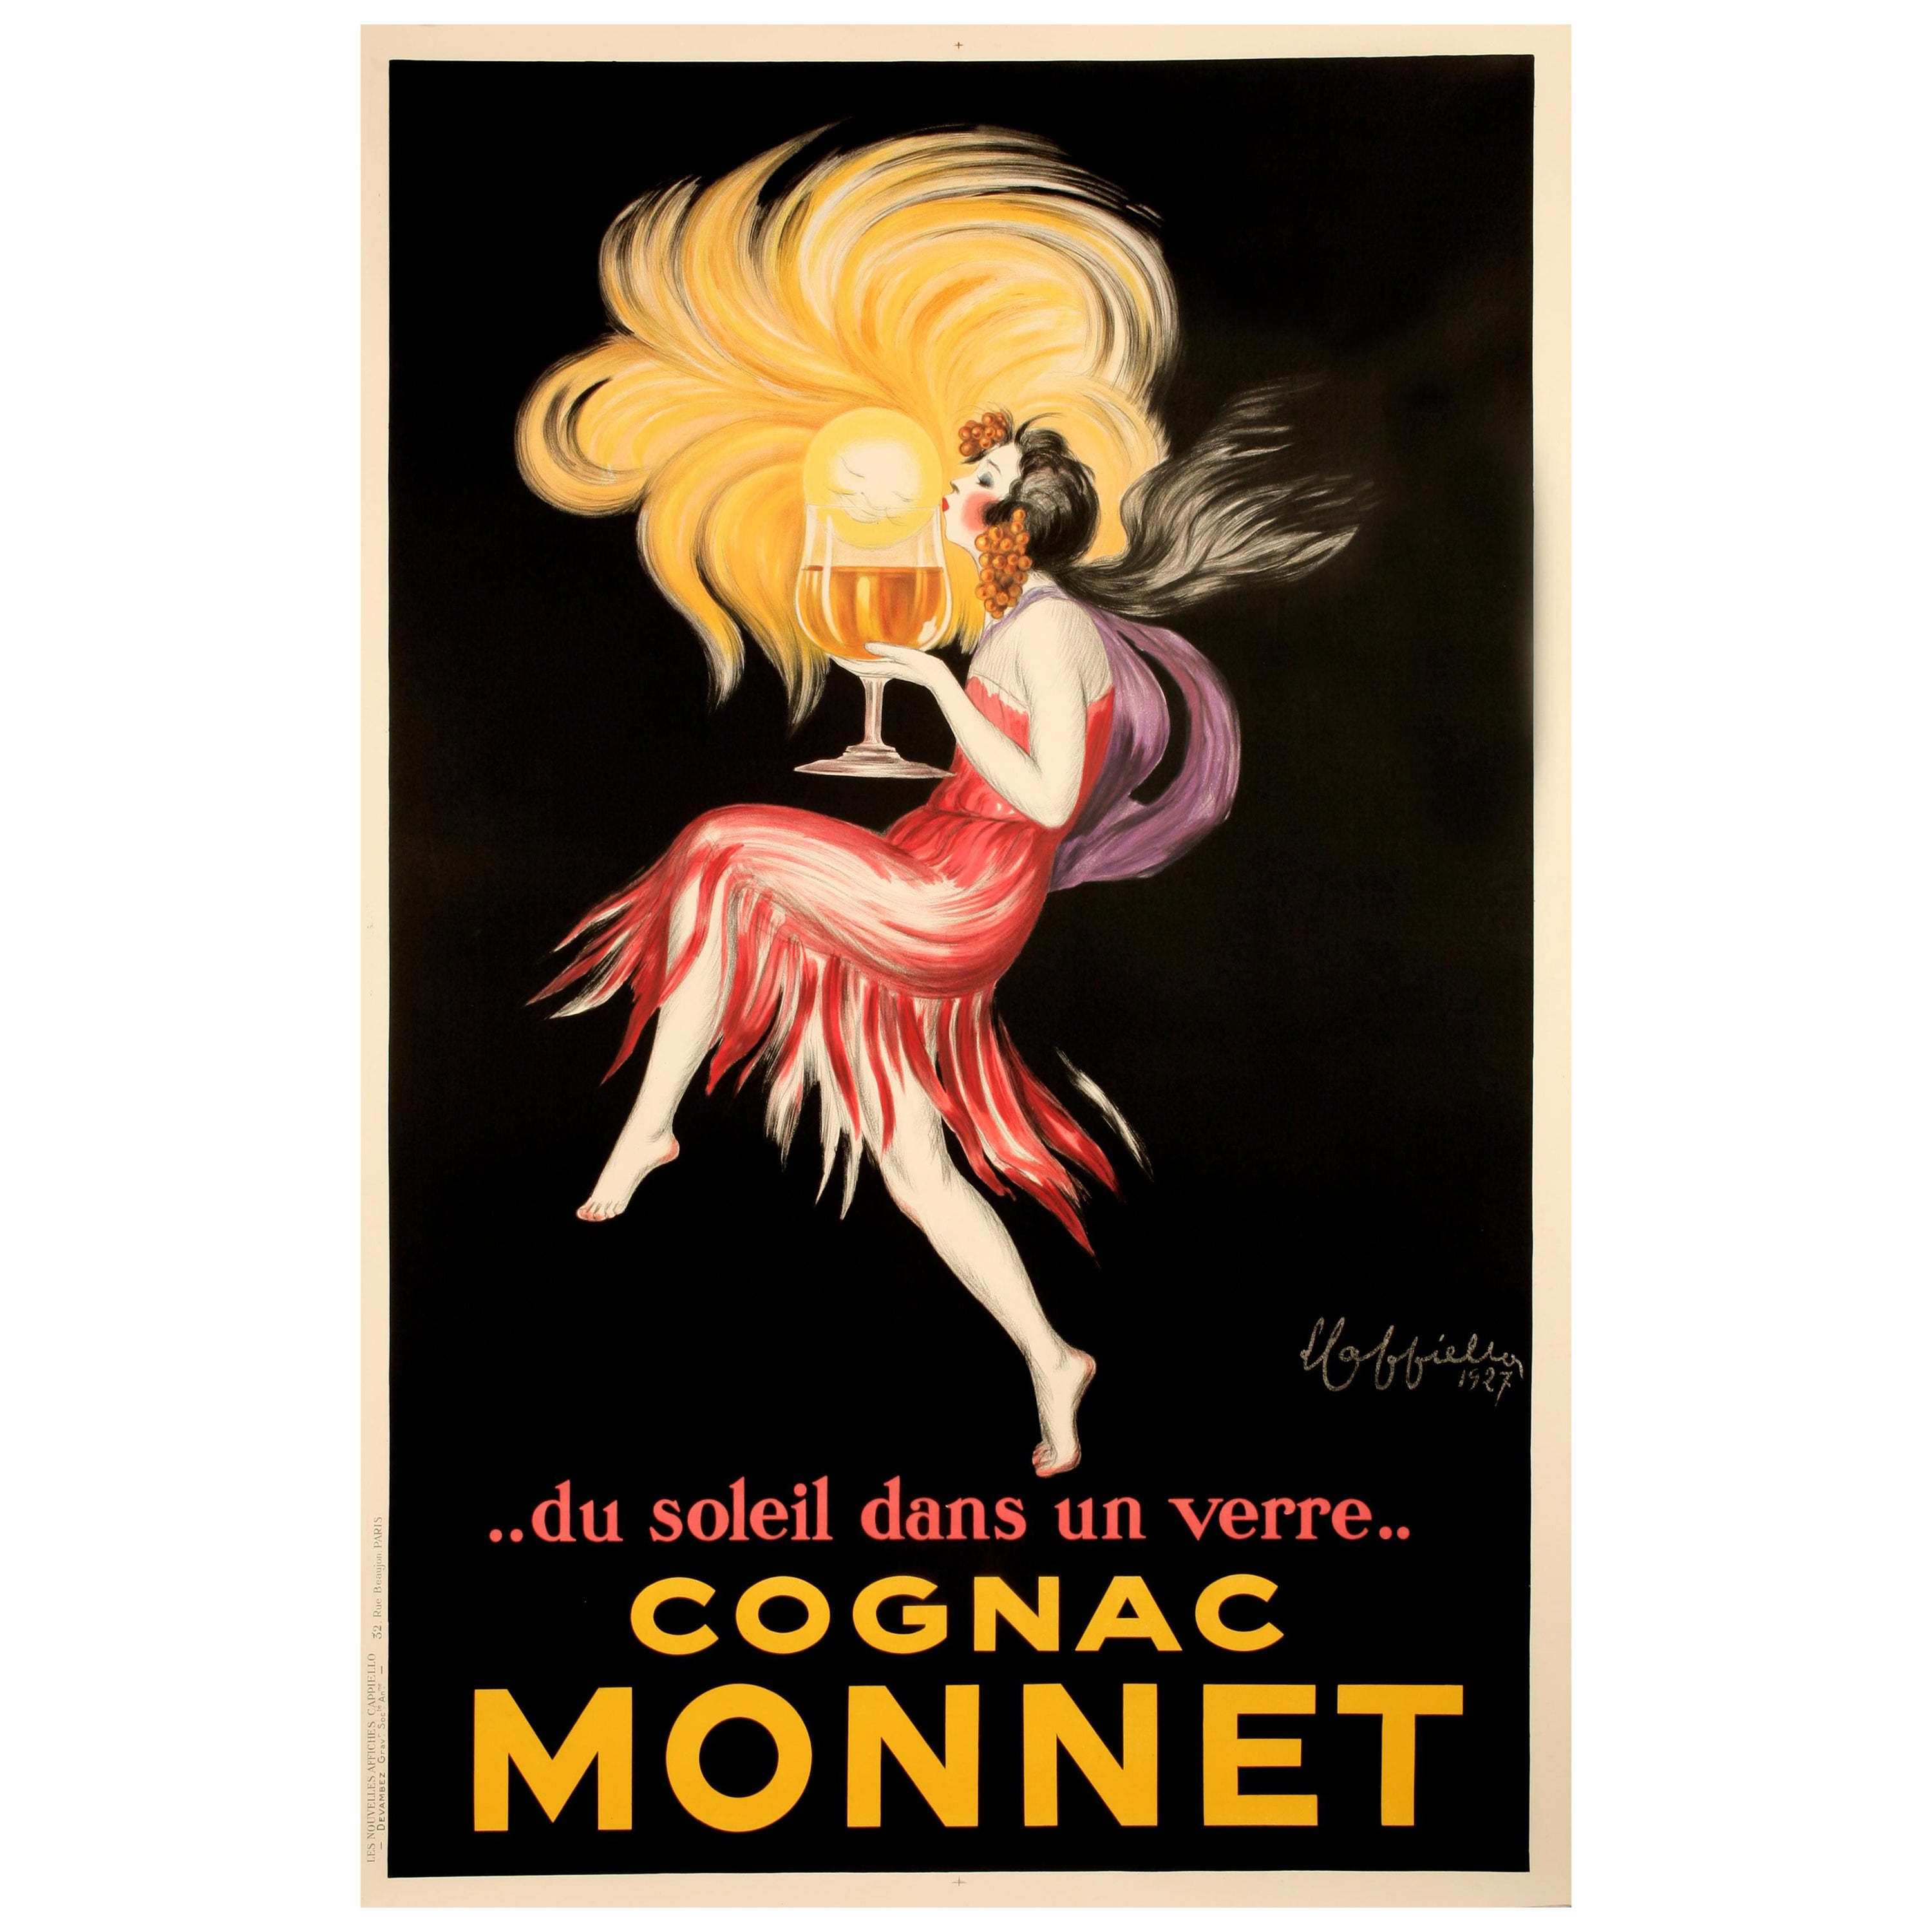 Cappiello, Original Alcohol Poster, Cognac Monnet, Salamander, Liquor, Sun, 1927 For Sale